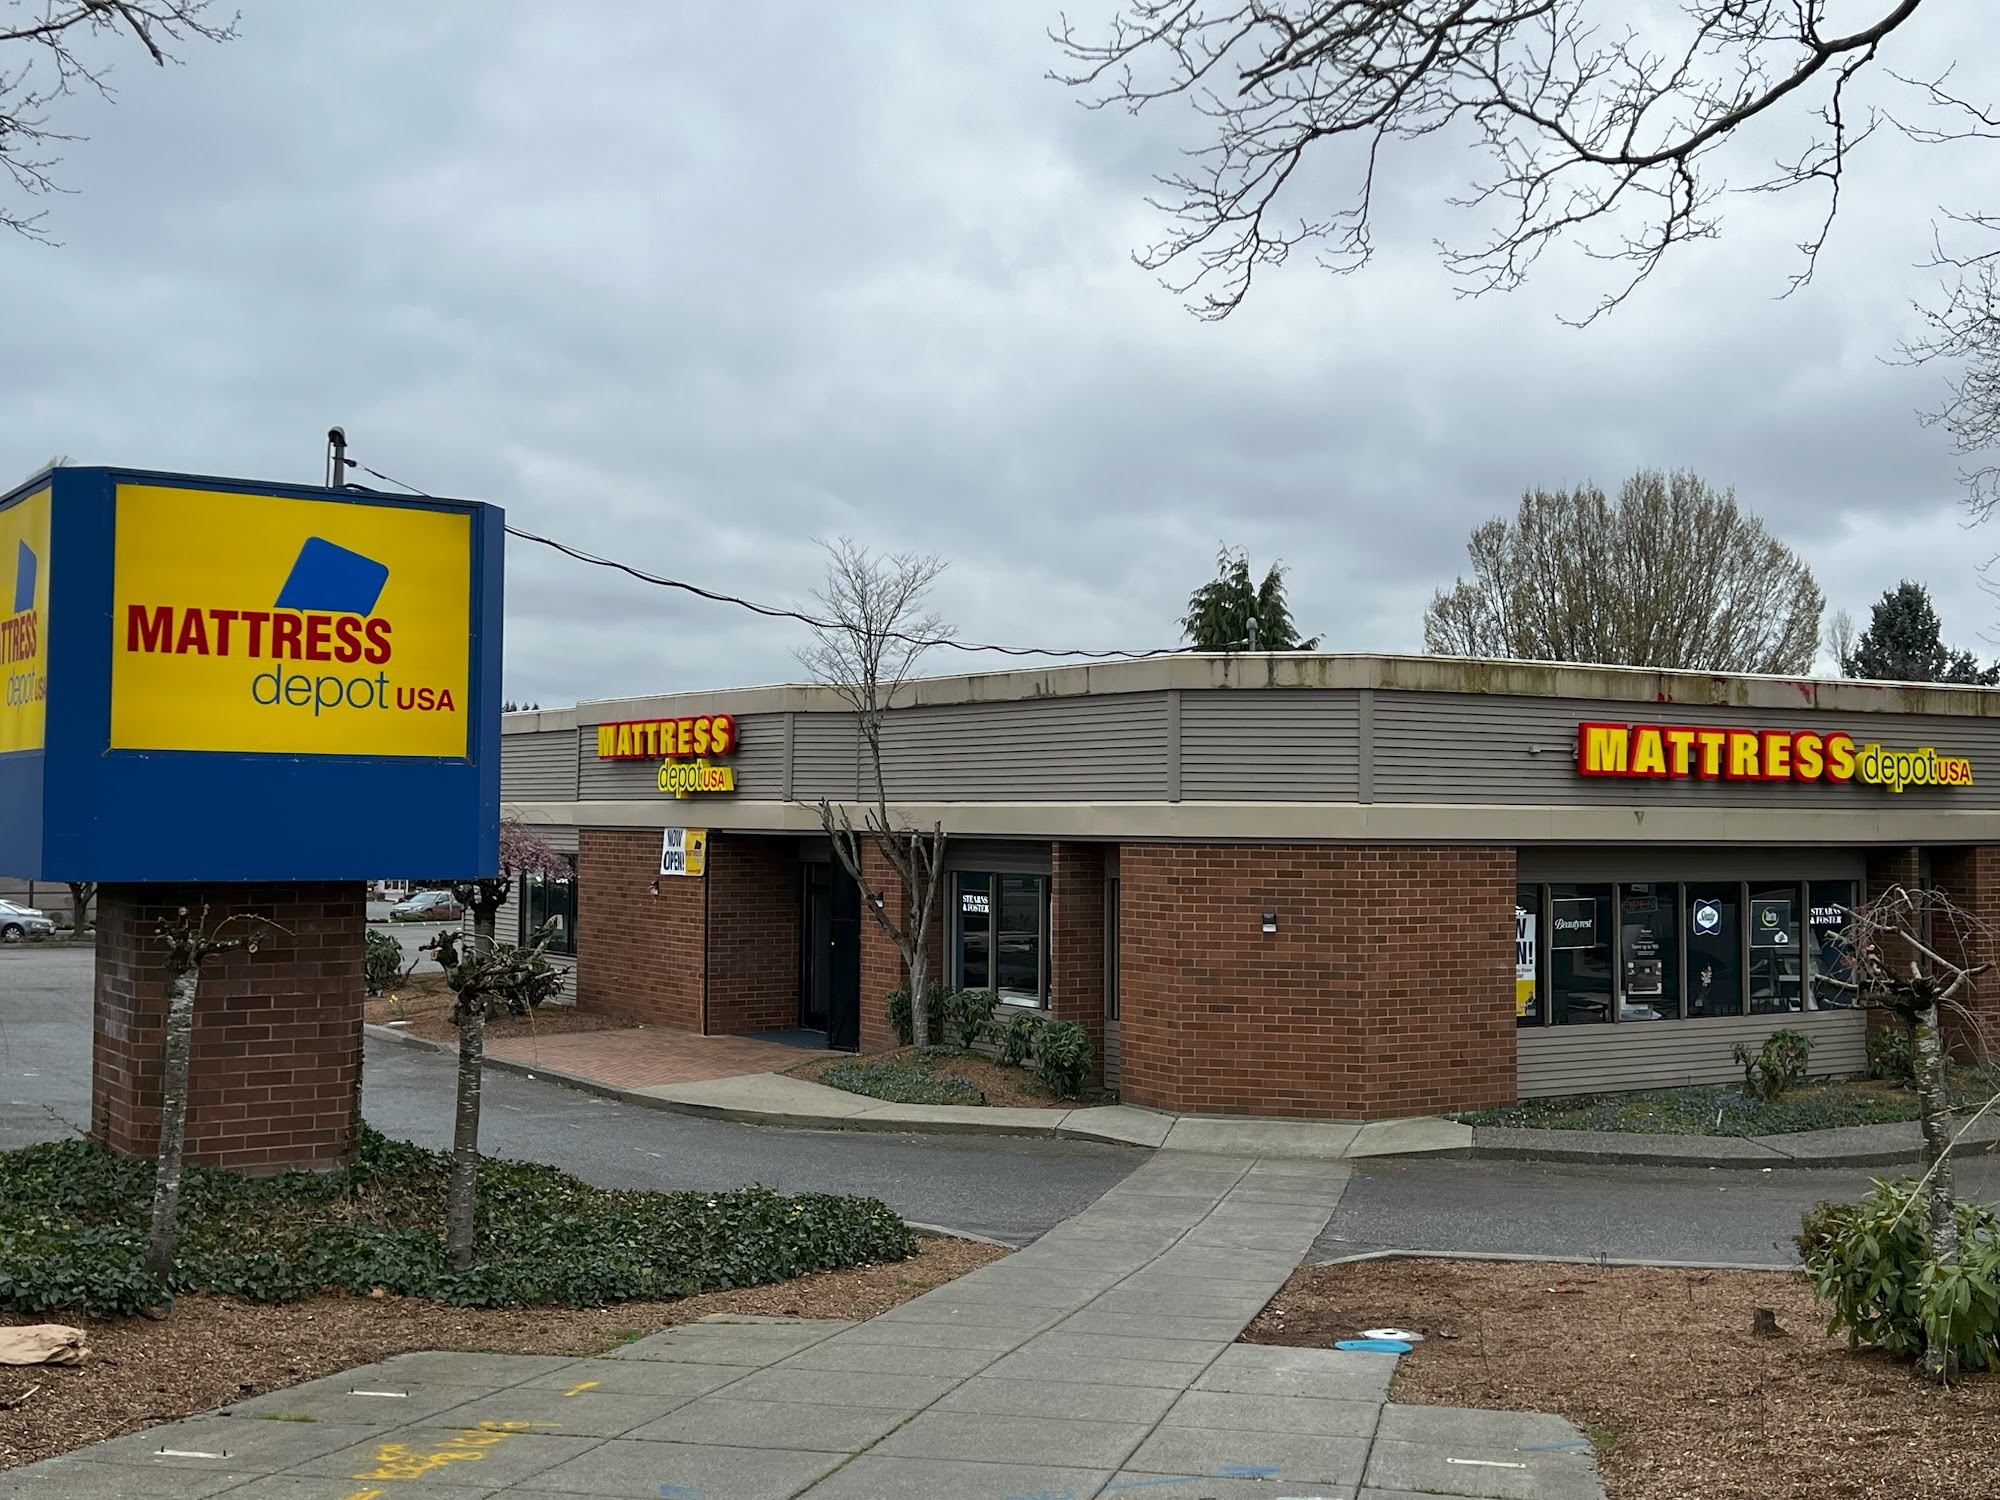 Mattress Depot USA